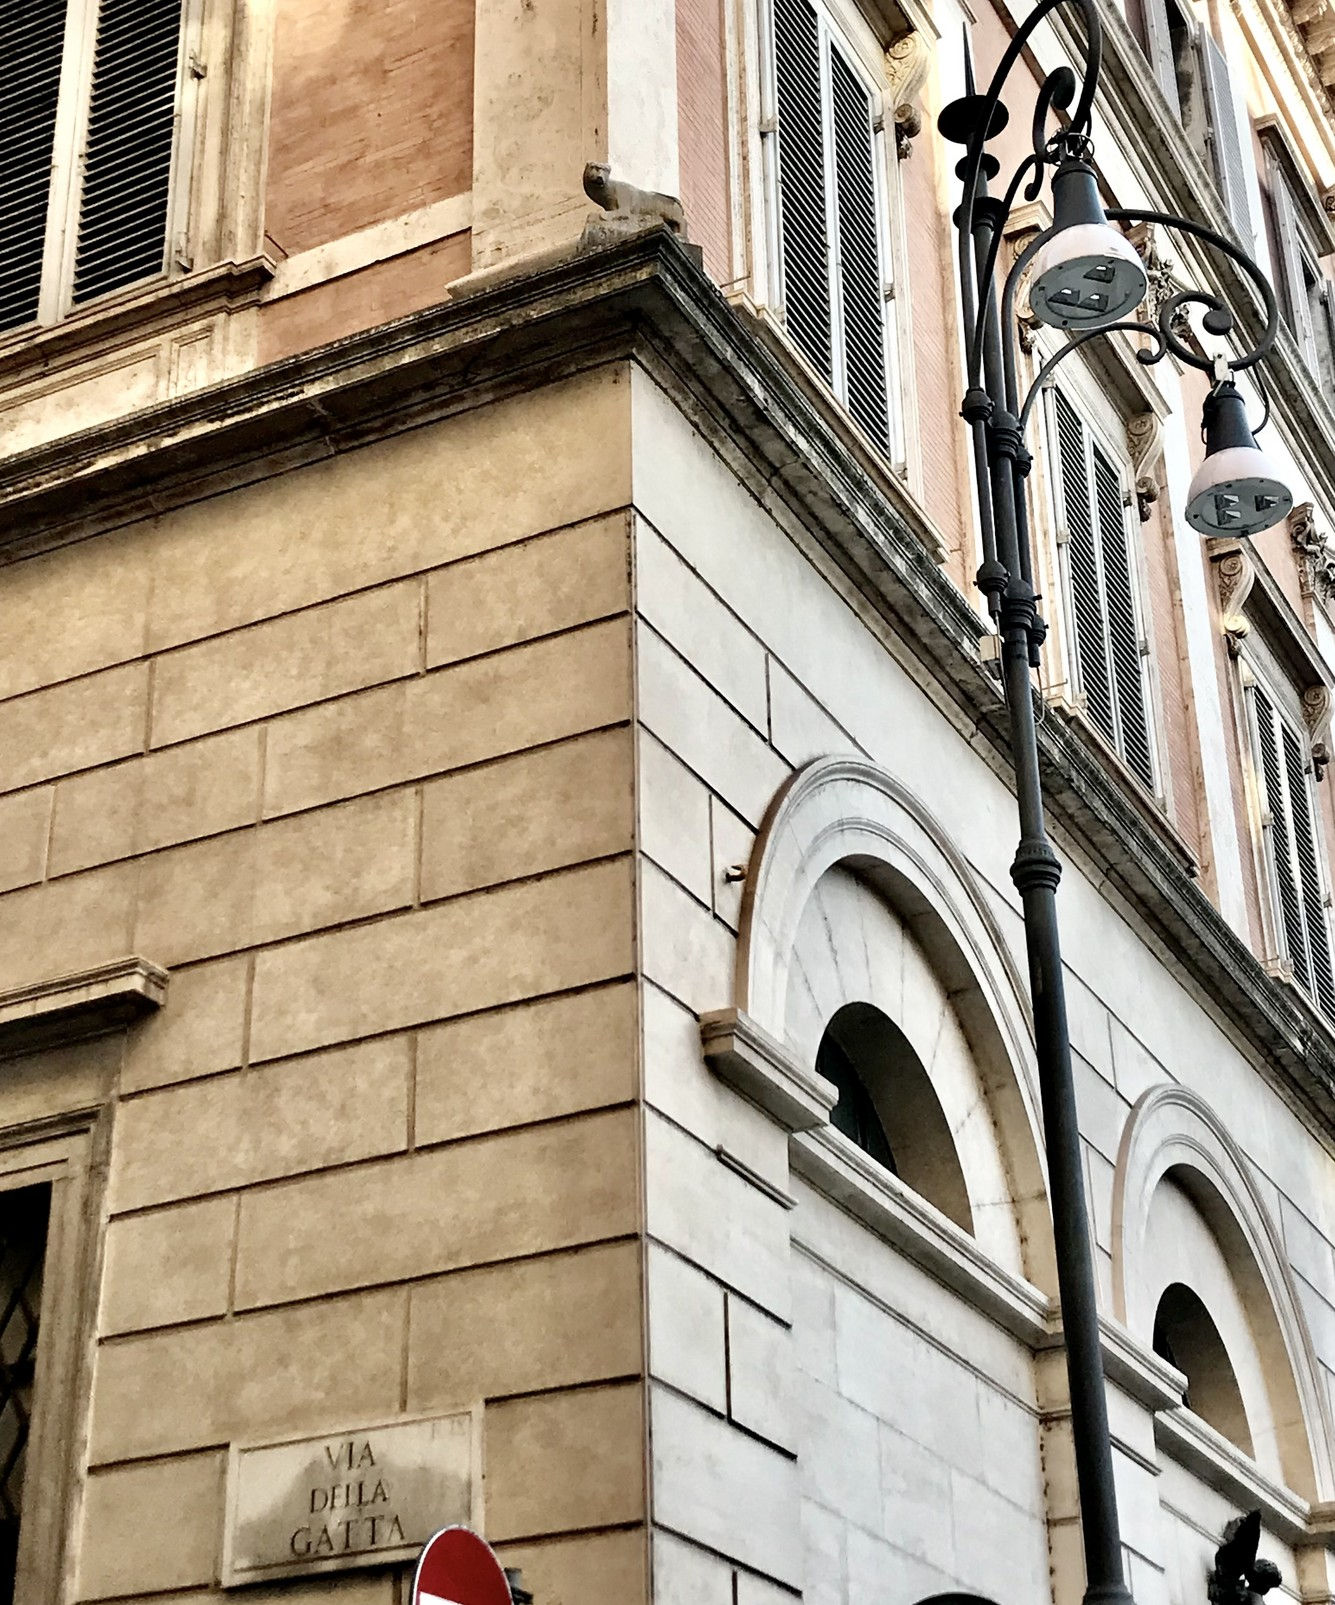 Fig. 5 - Statua della Gatta in via della Gatta, Roma 
(foto 2021 cortesia © Vittoria Sut)